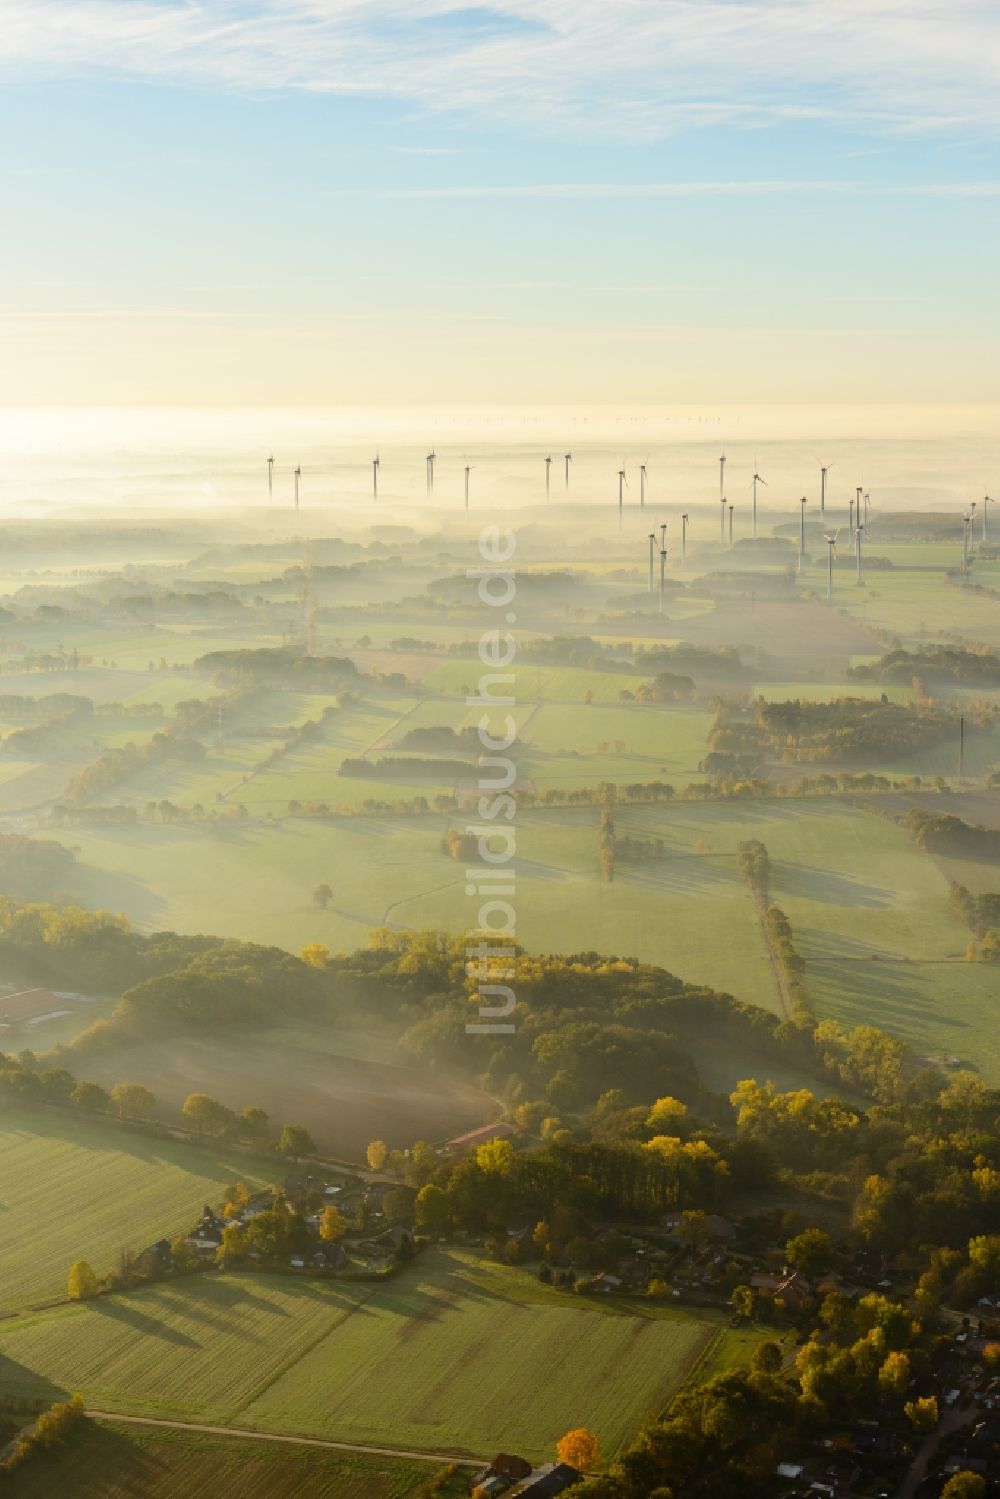 Luftbild Deinste - Wetterbedingt in eine Nebel- Schicht eingebettete Windenergieanlagen auf einem Feld in Deinste im Bundesland Niedersachsen, Deutschland